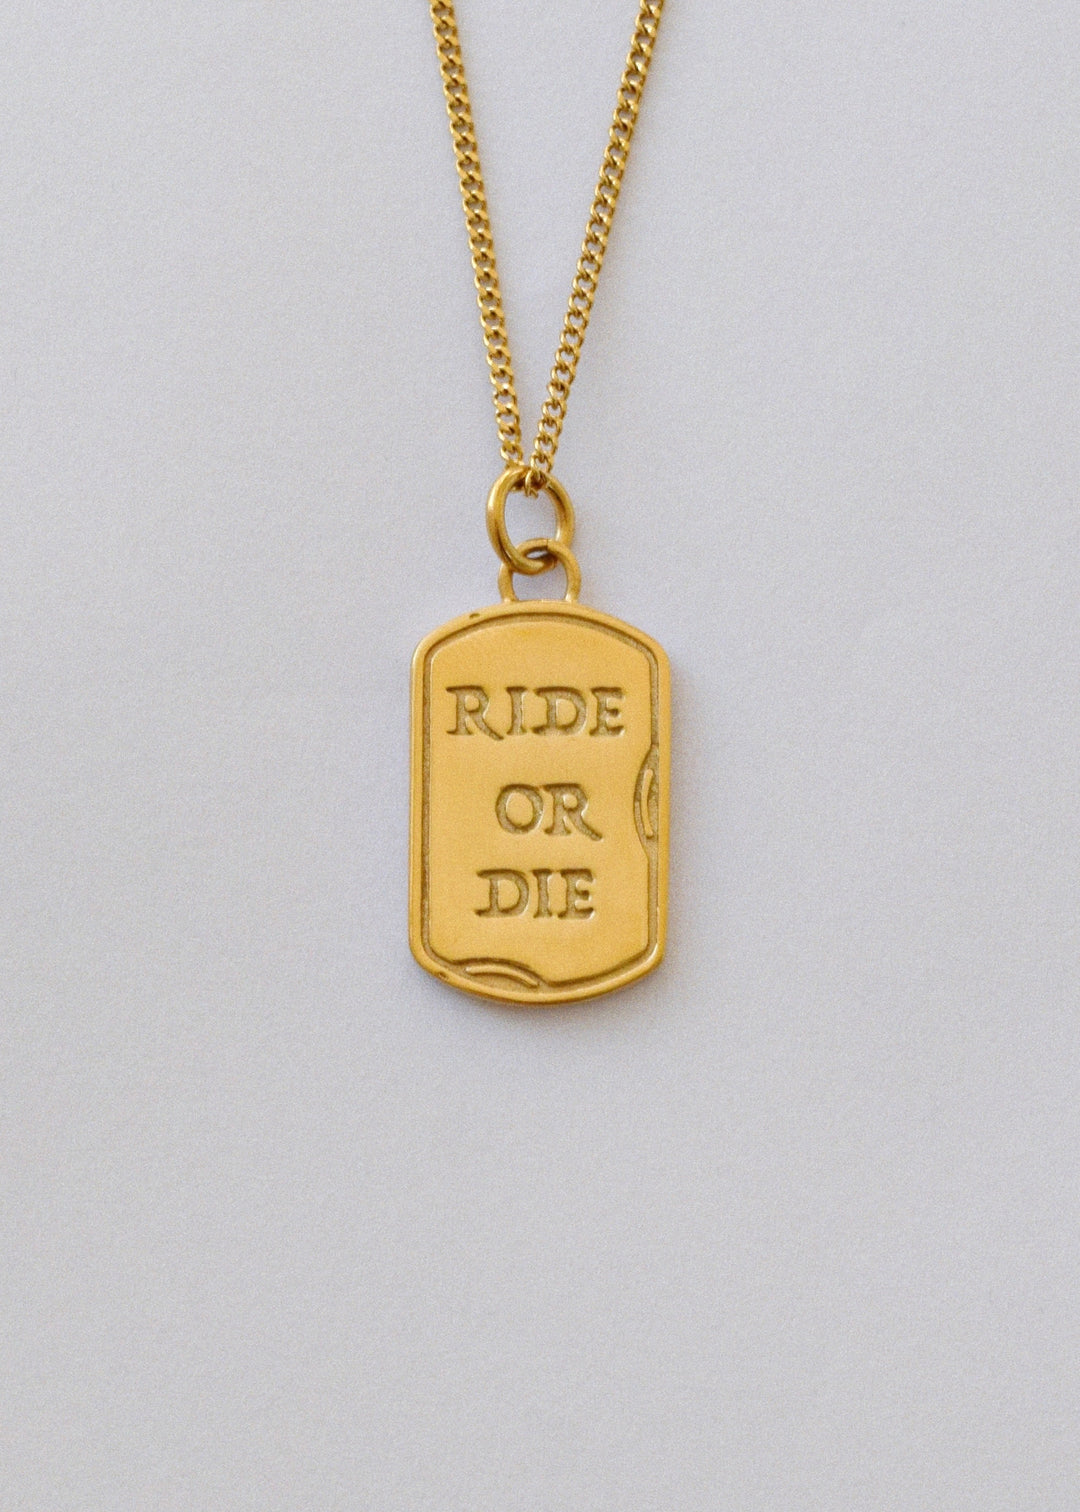 RIDE OR DIE GOLD.